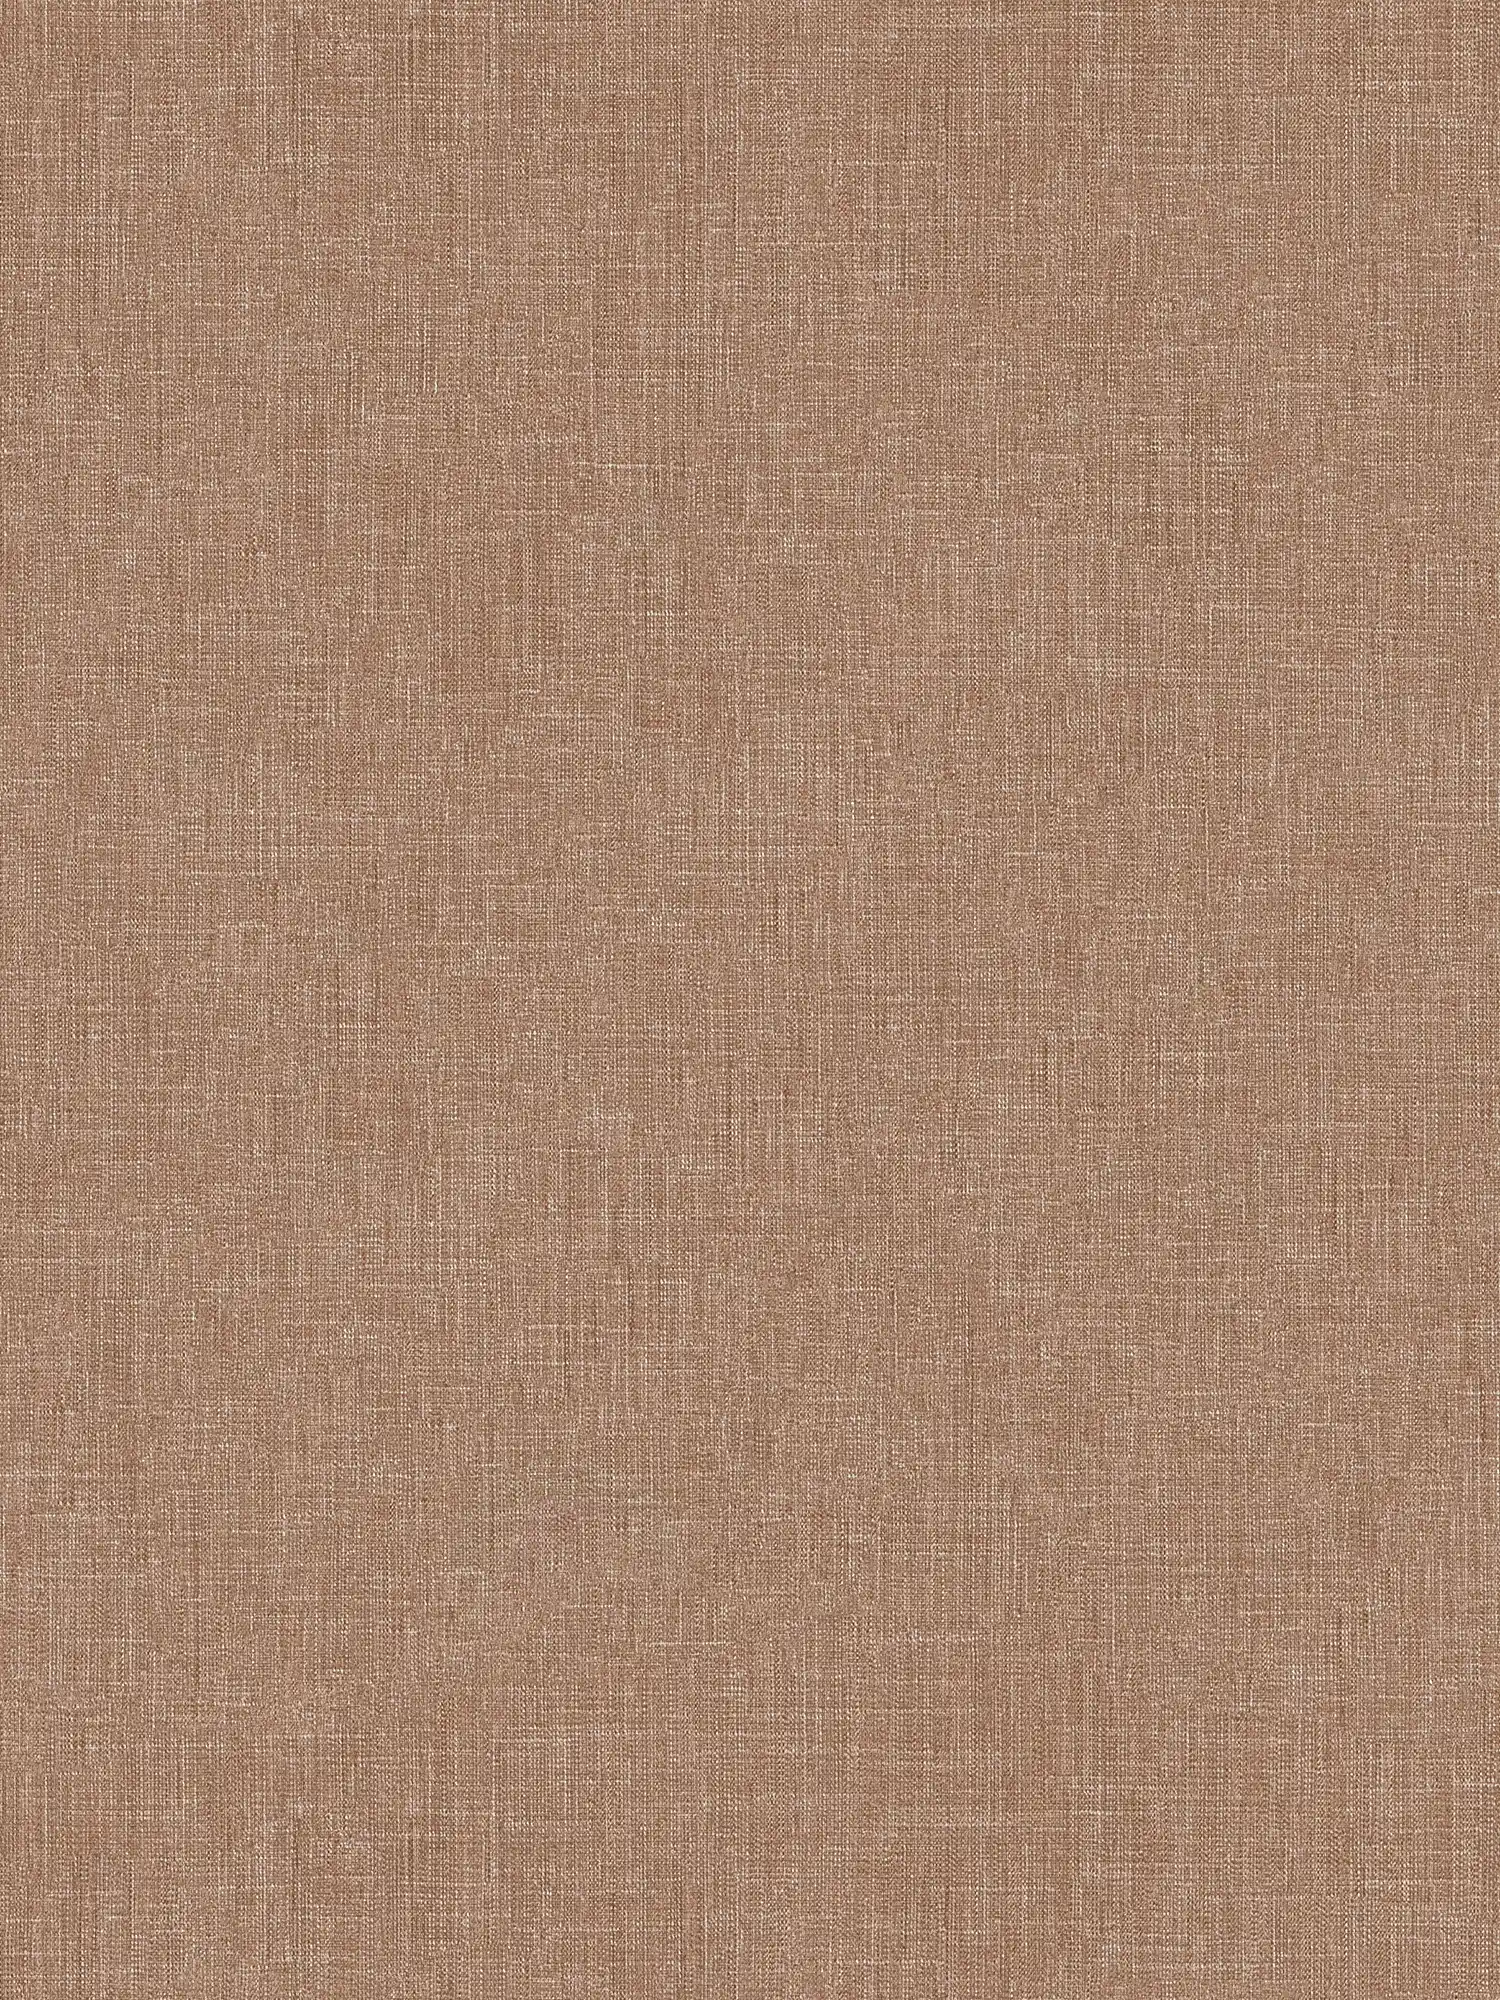 Papel pintado de aspecto textil con patrón texturizado - Marrón
